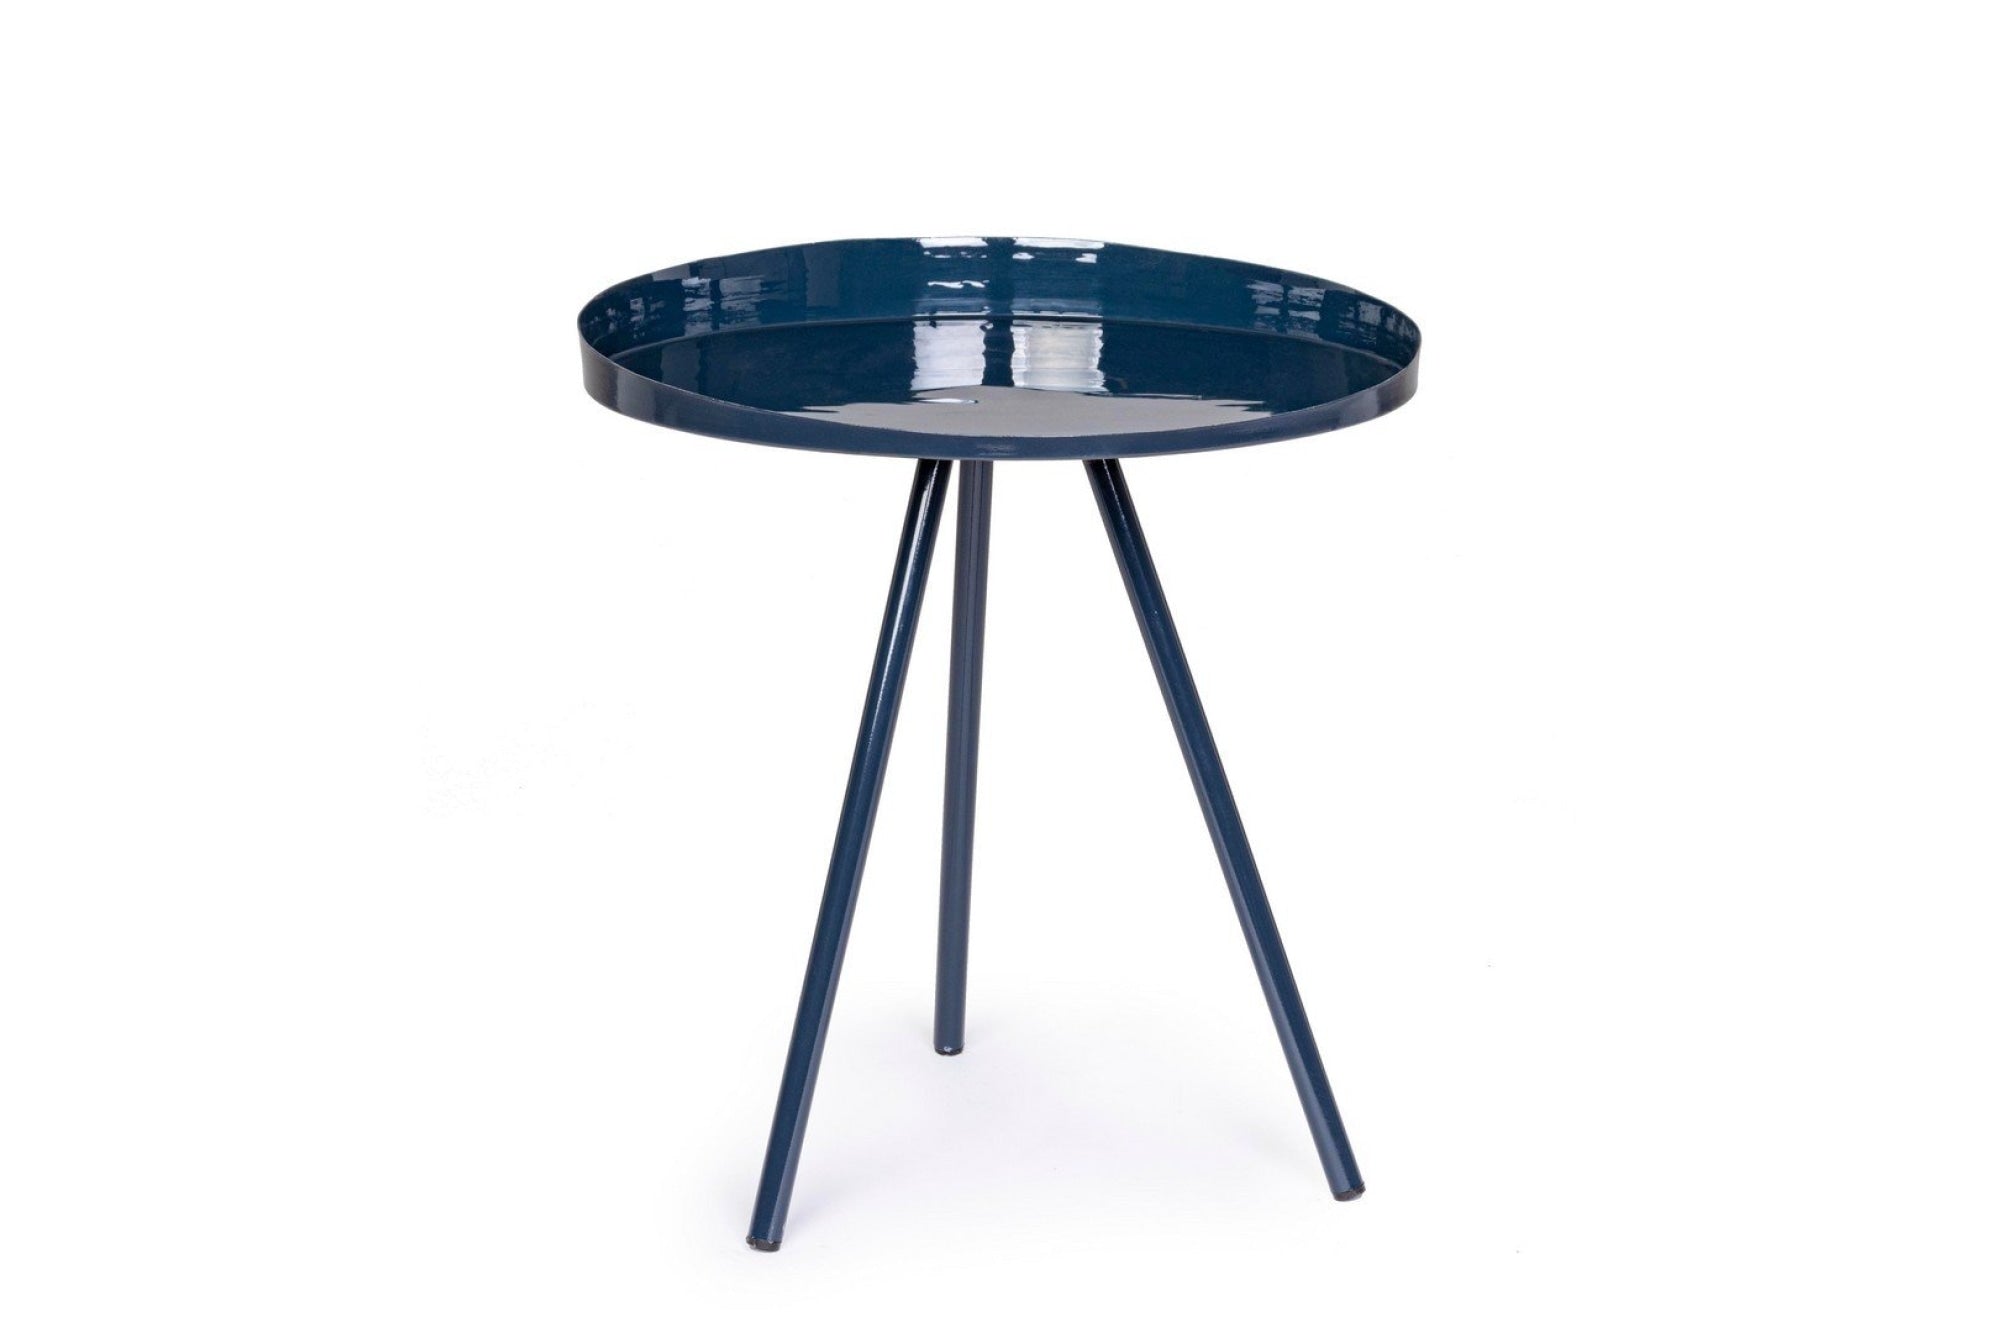 ANCHITA kék acél dohányzóasztal